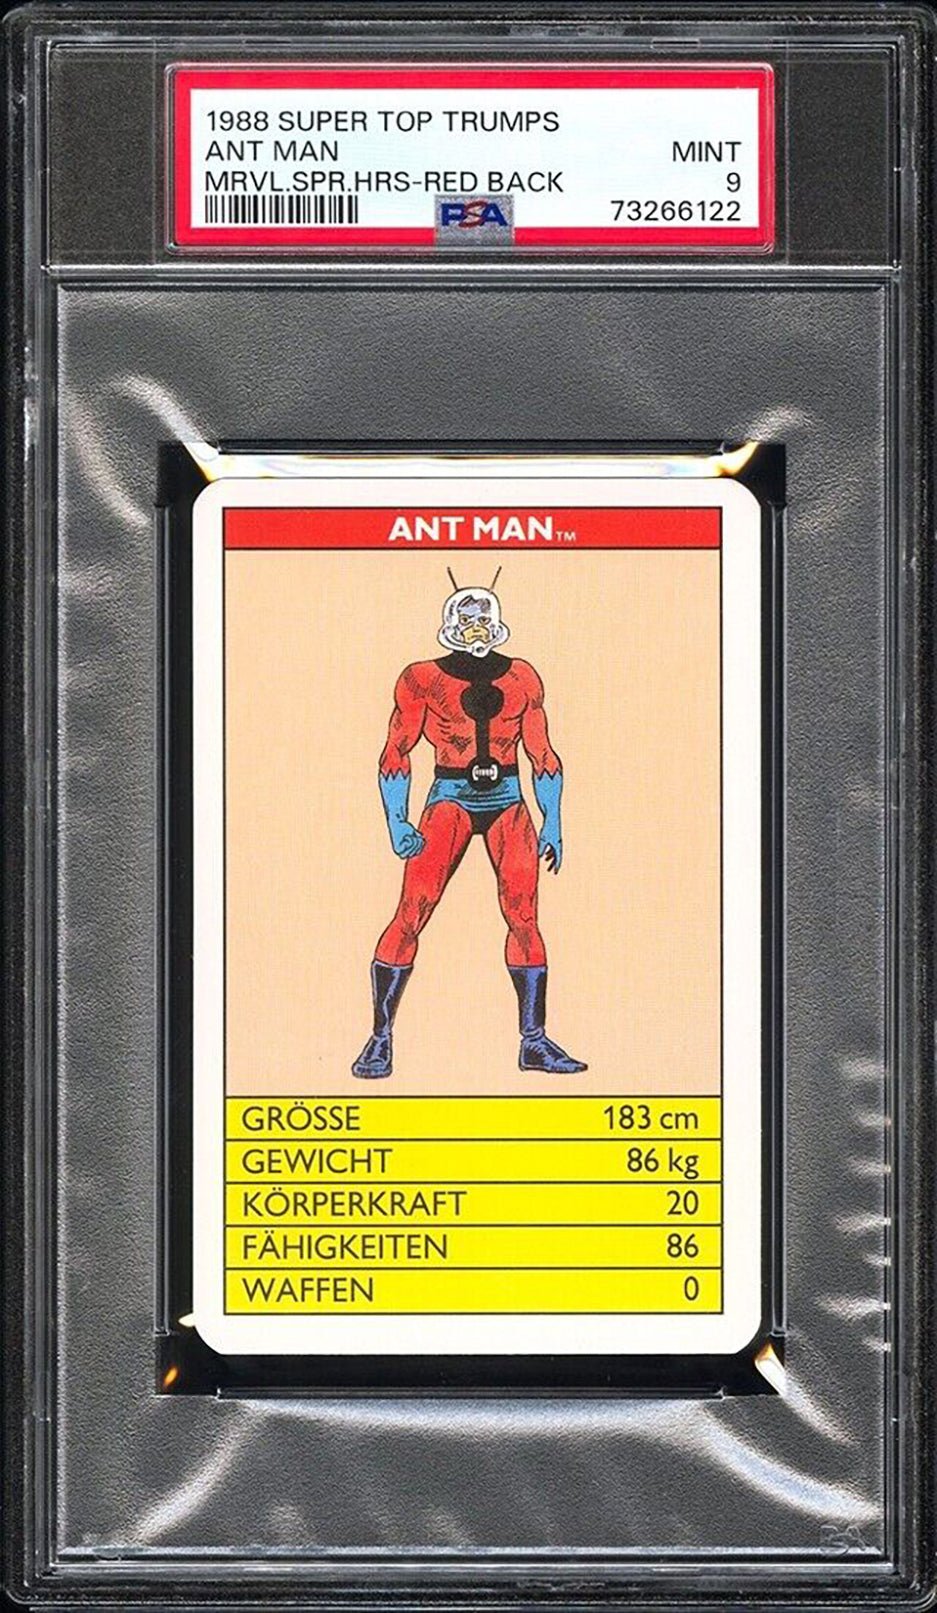 ANT MAN PSA 9 1988 Super Top Trumps Marvel Super Heroes Red Back Marvel Base Graded Cards - Hobby Gems